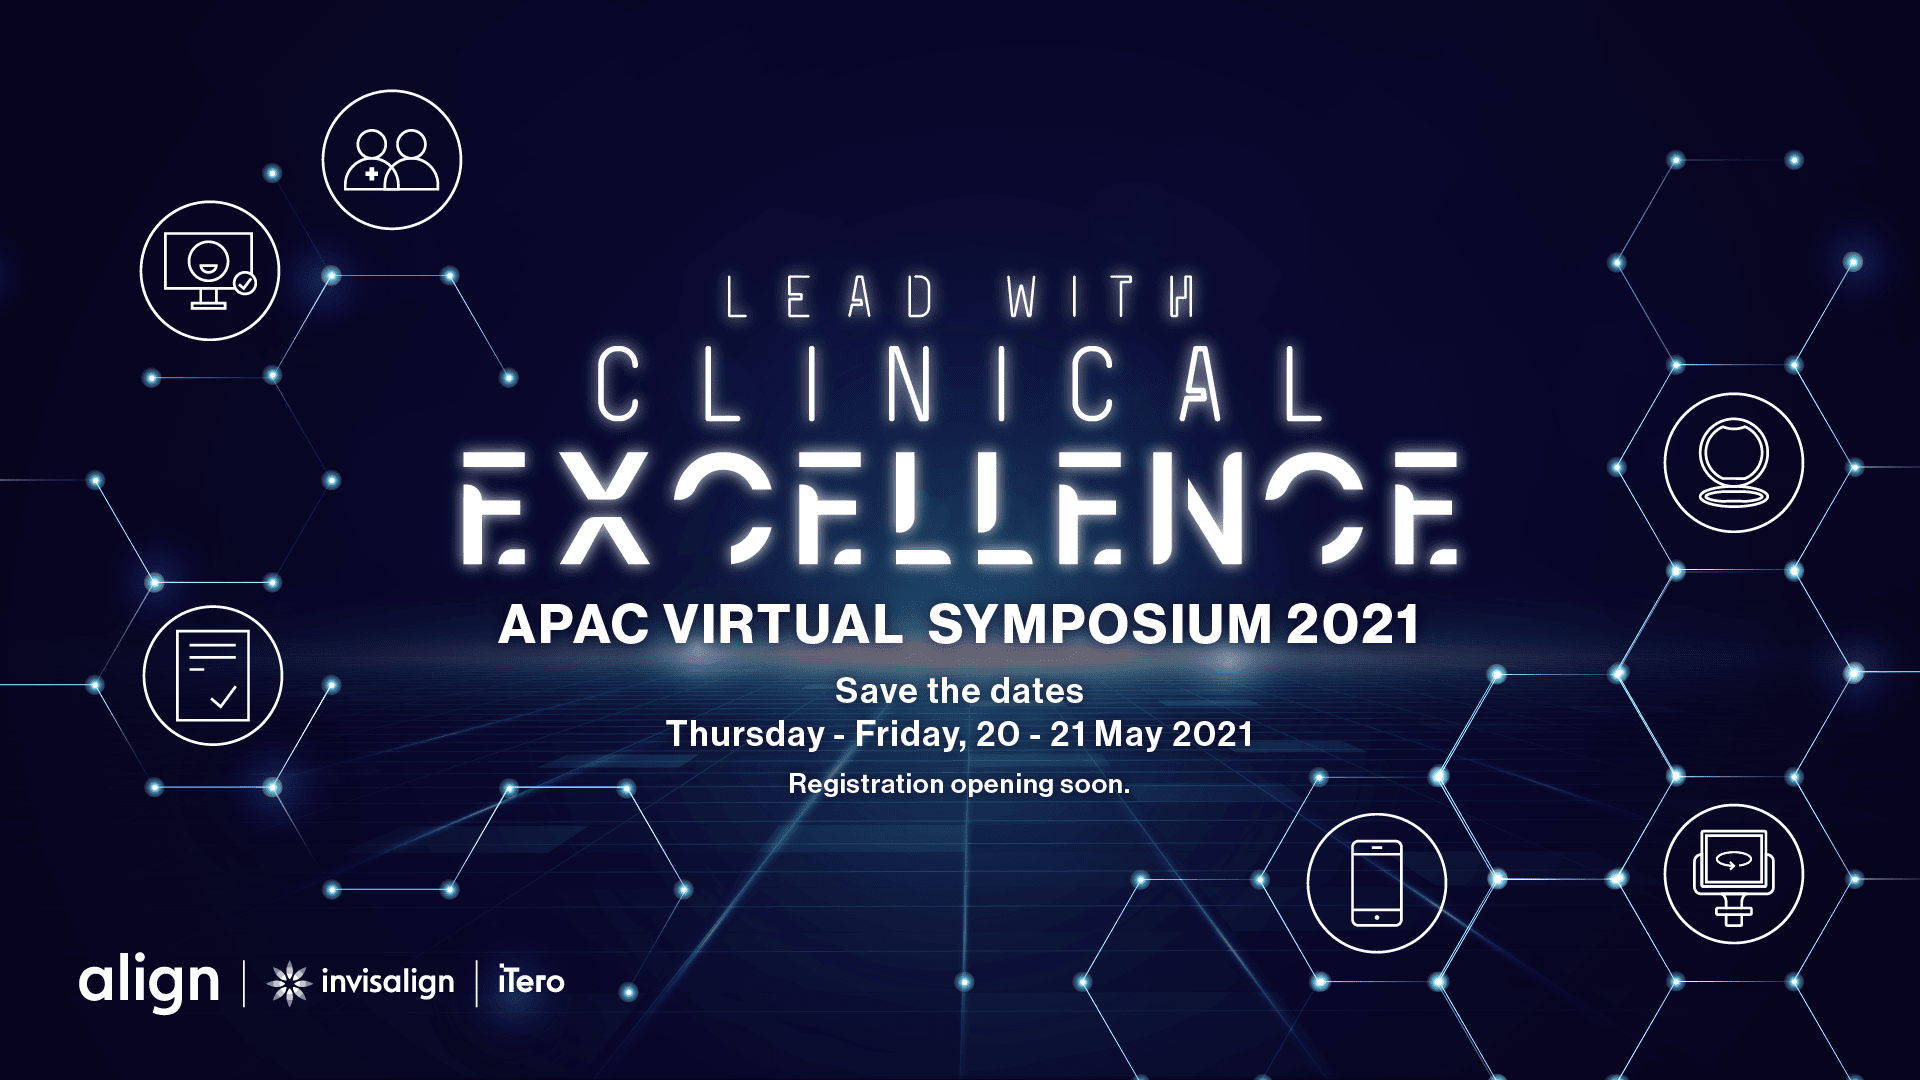 Invisalign APAC Virtual Symposium